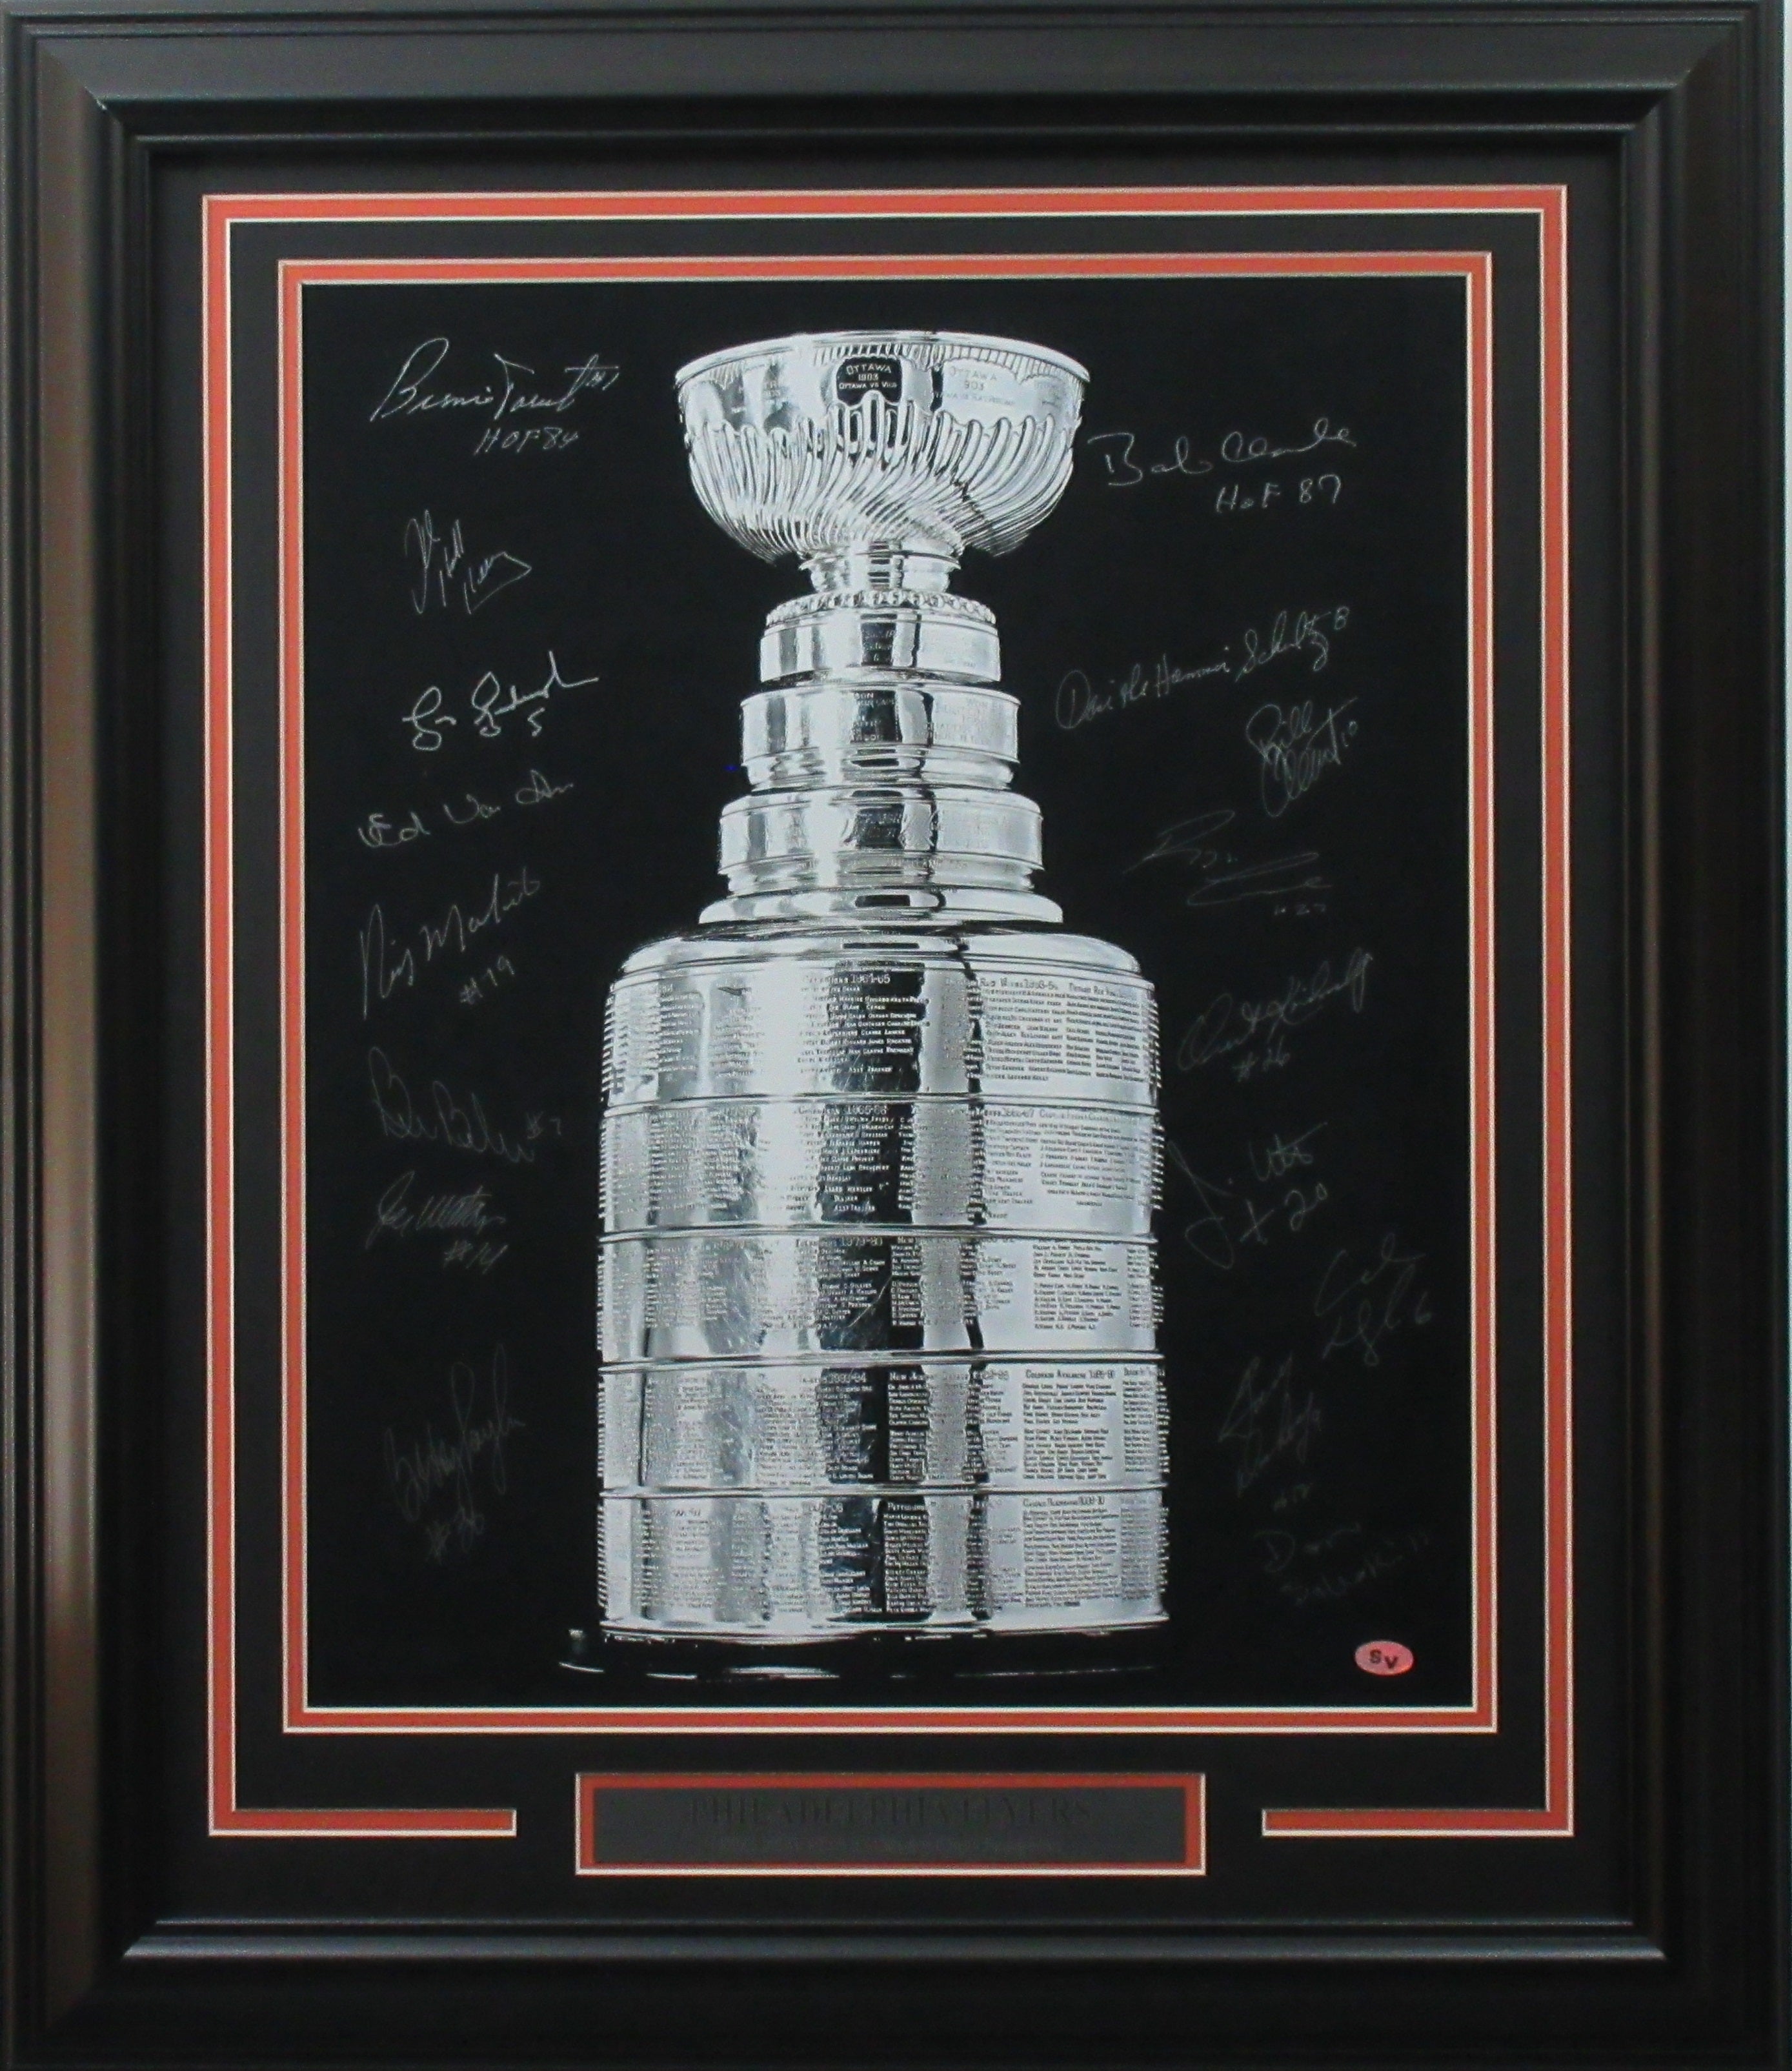 Gary Dornhoefer autographed signed jersey NHL Philadelphia Flyers